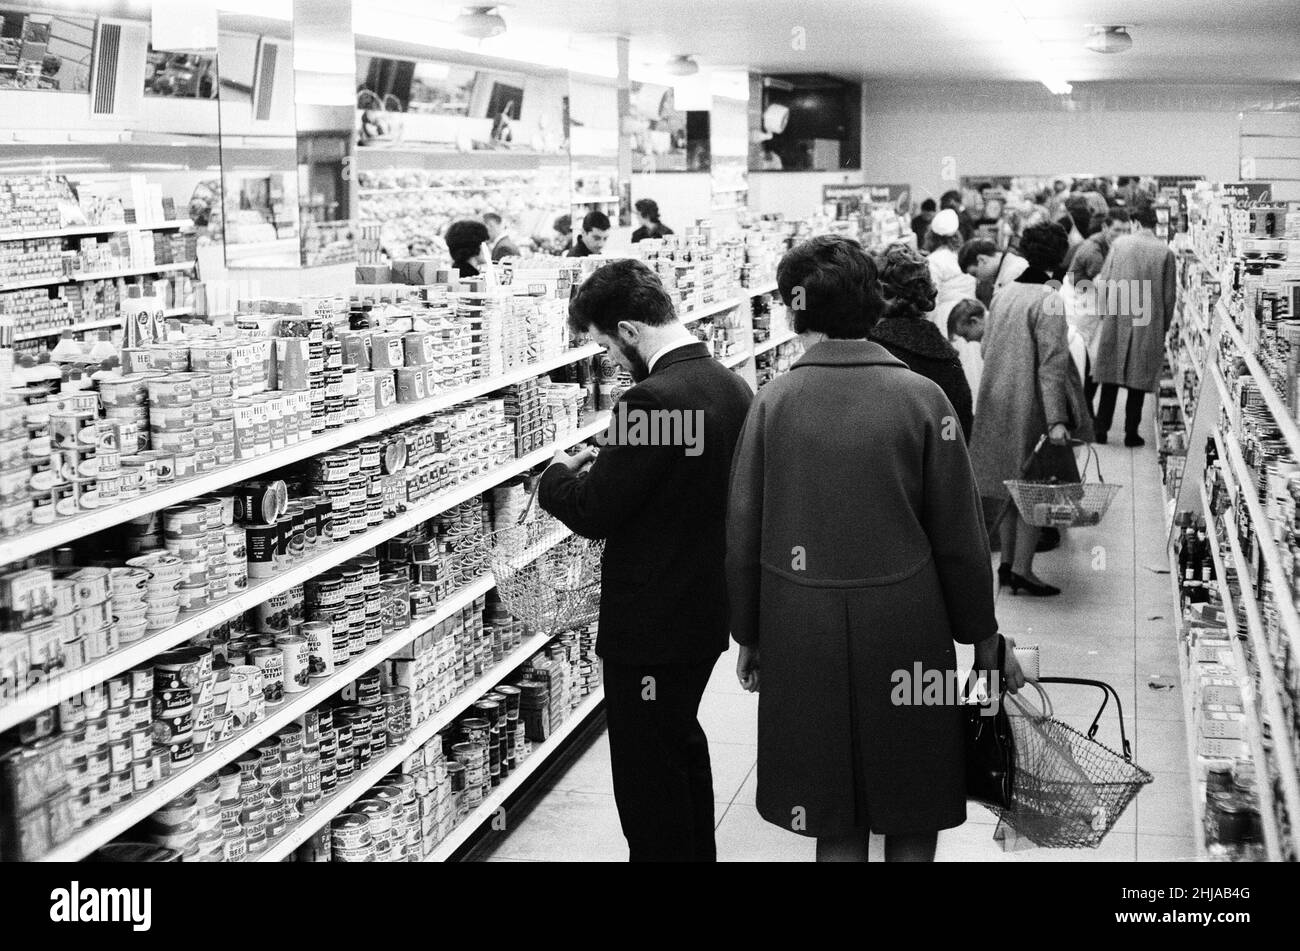 Shoppers, supermarché Fine Fare, Wilton, Londres, 29th octobre 1963.Allée de magasinage, articles sur les tablettes. Banque D'Images